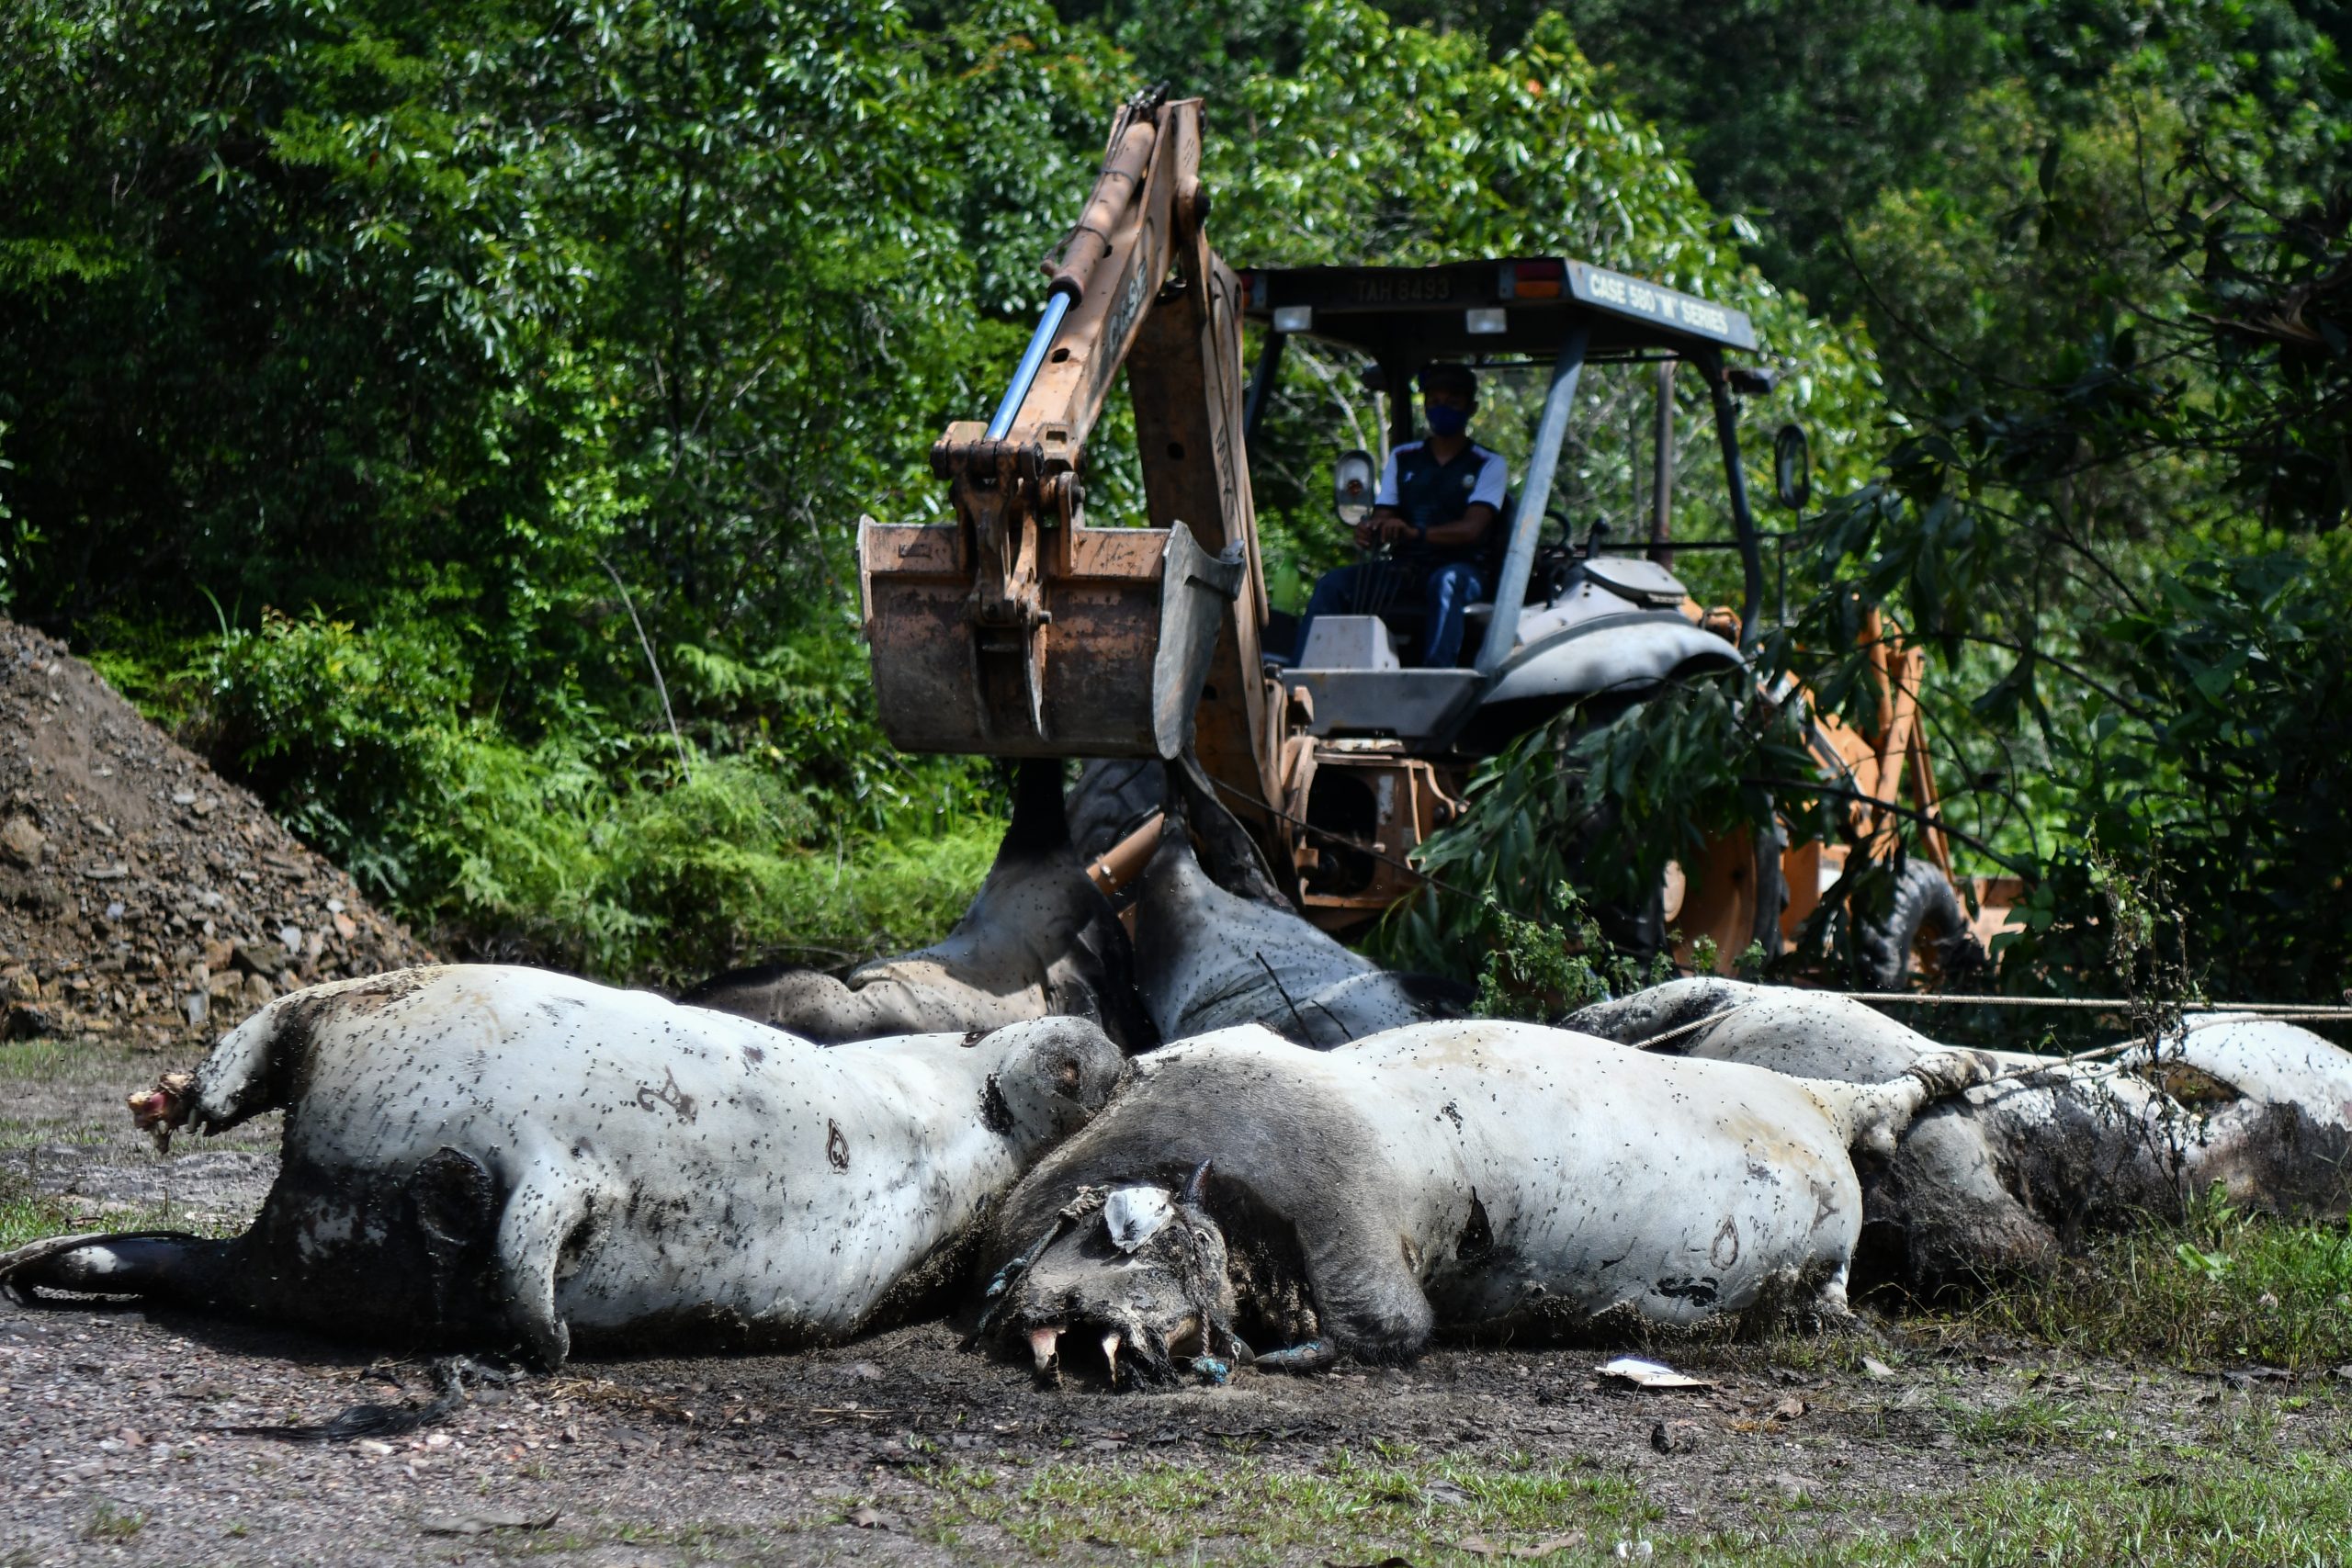 东04：登州兽医局已收集11头死亡后被丢弃在甘榜双溪乐卡一处荒地的牛只的样本，以进行化验鉴定牛只的死因。